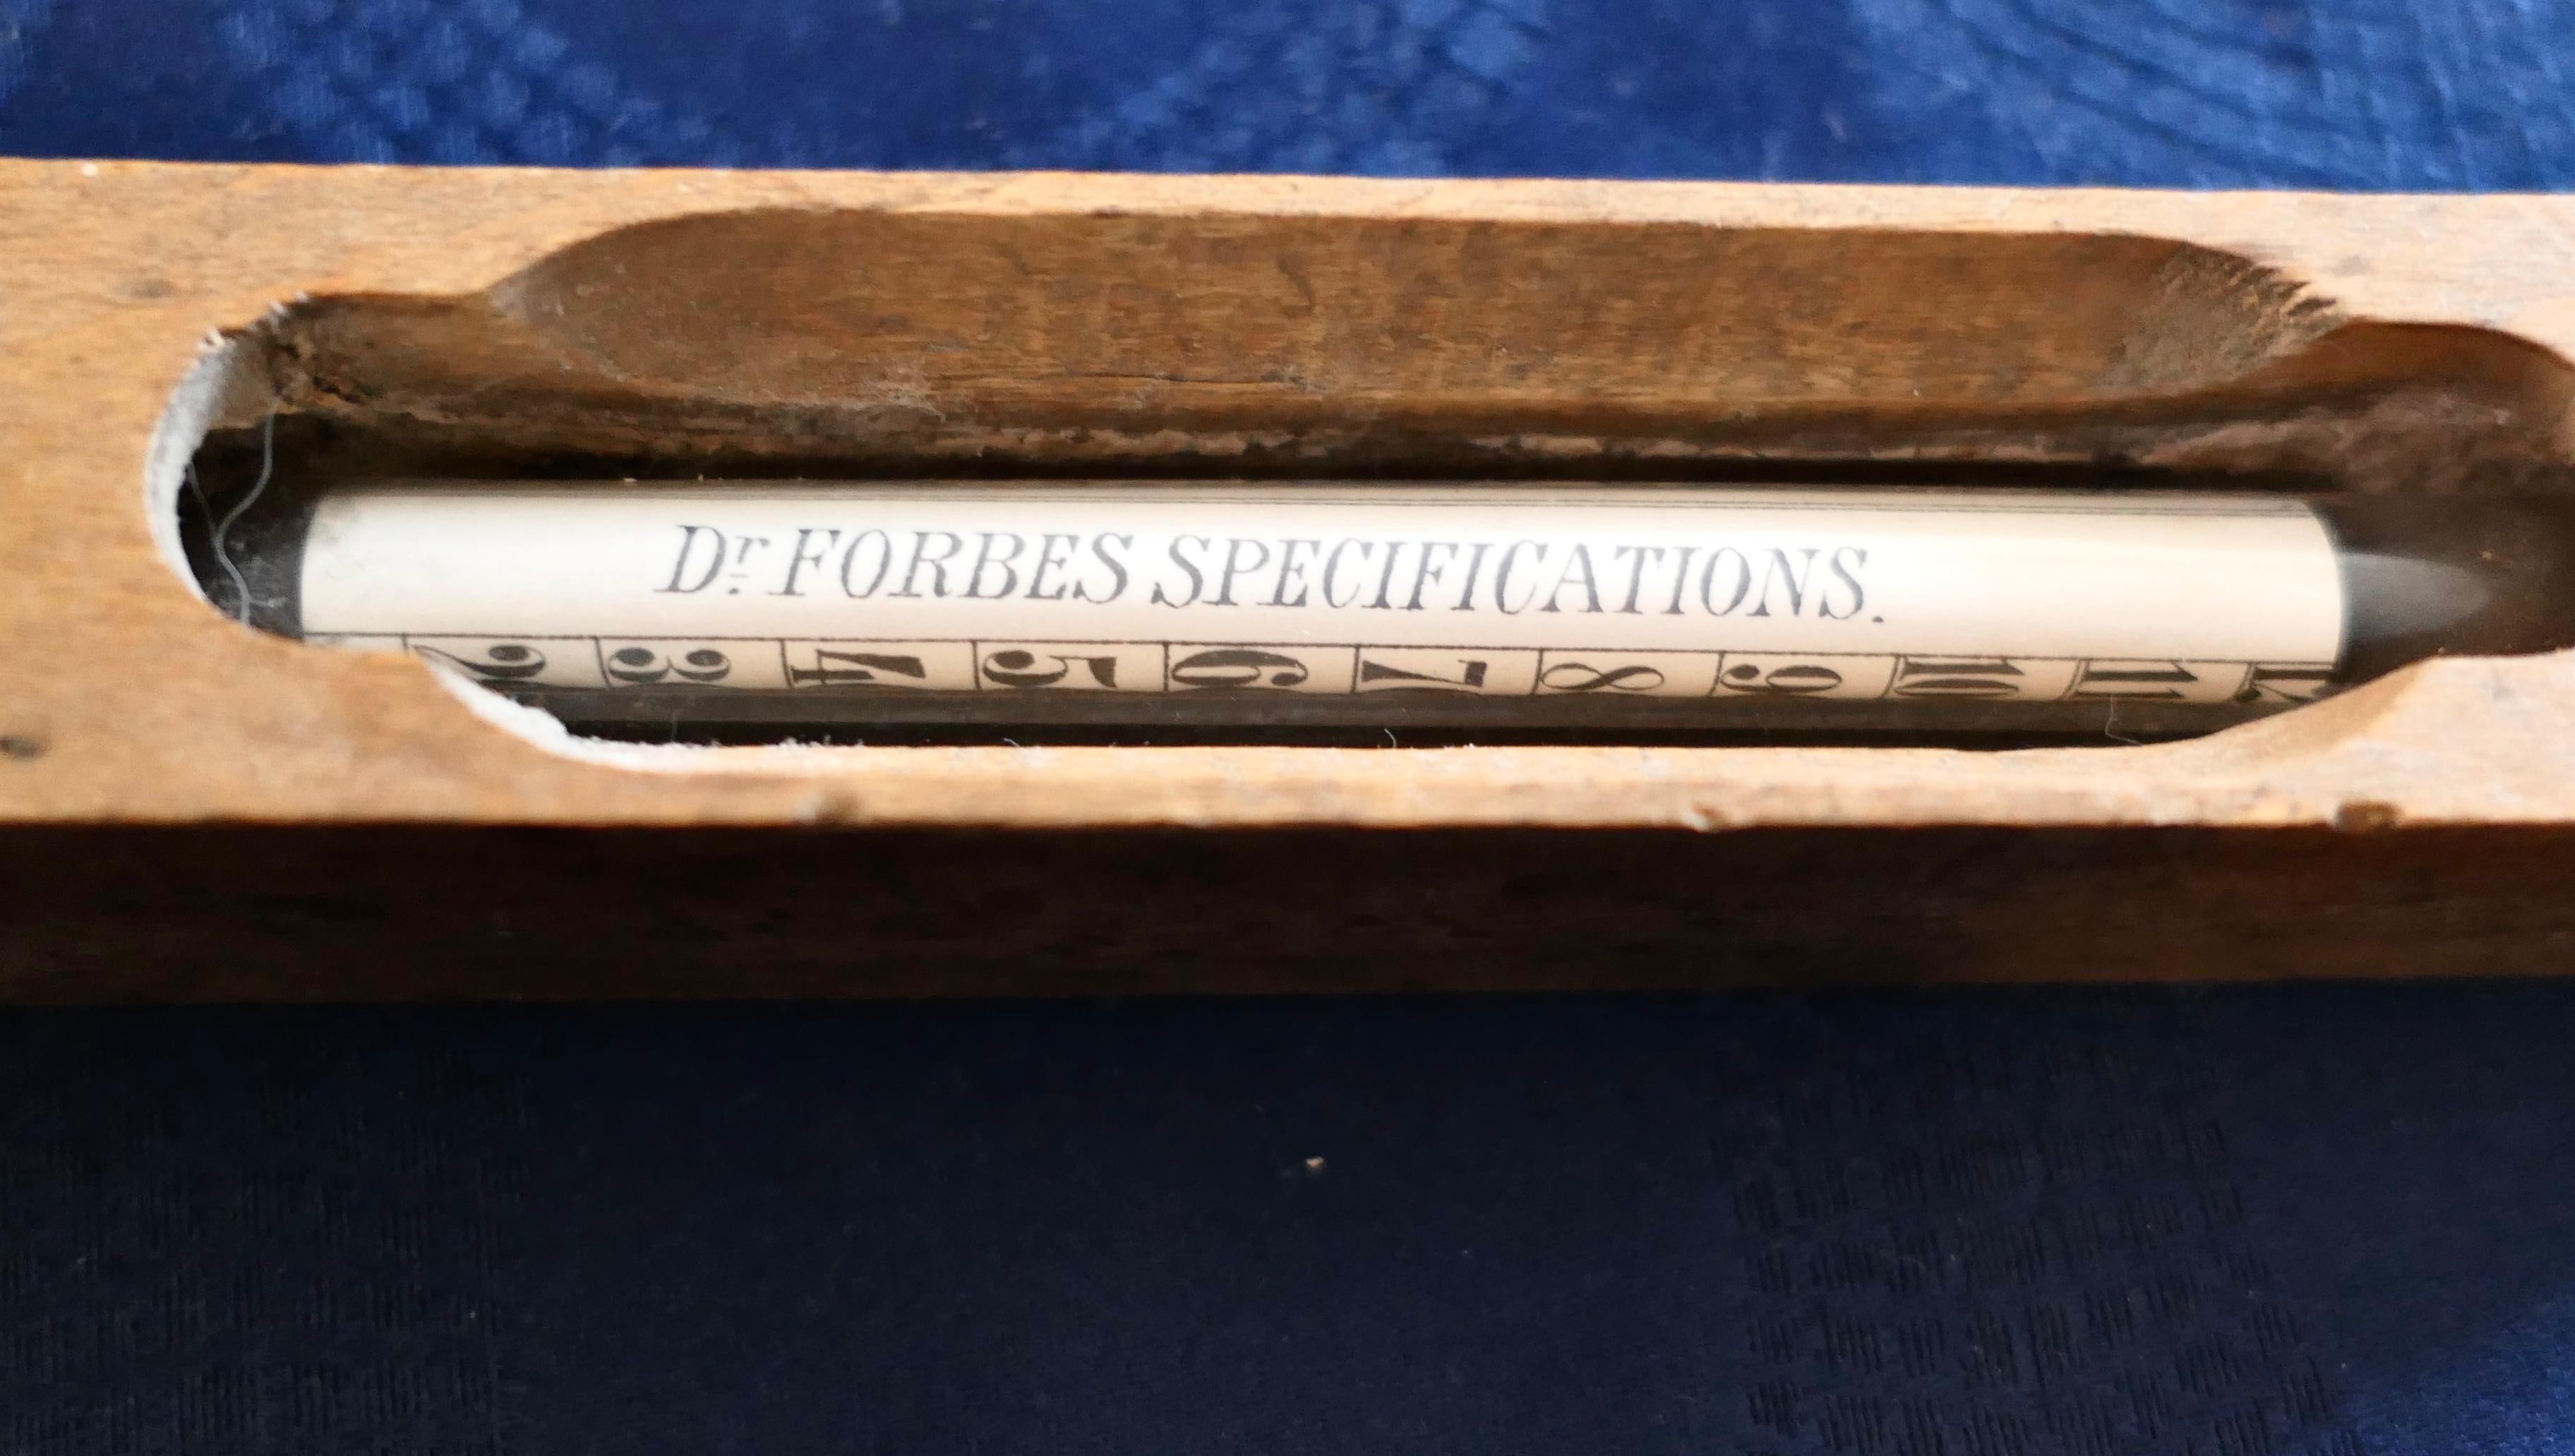 Édouardien thermomètre de Bath Spécifications de Dr Forbes     en vente